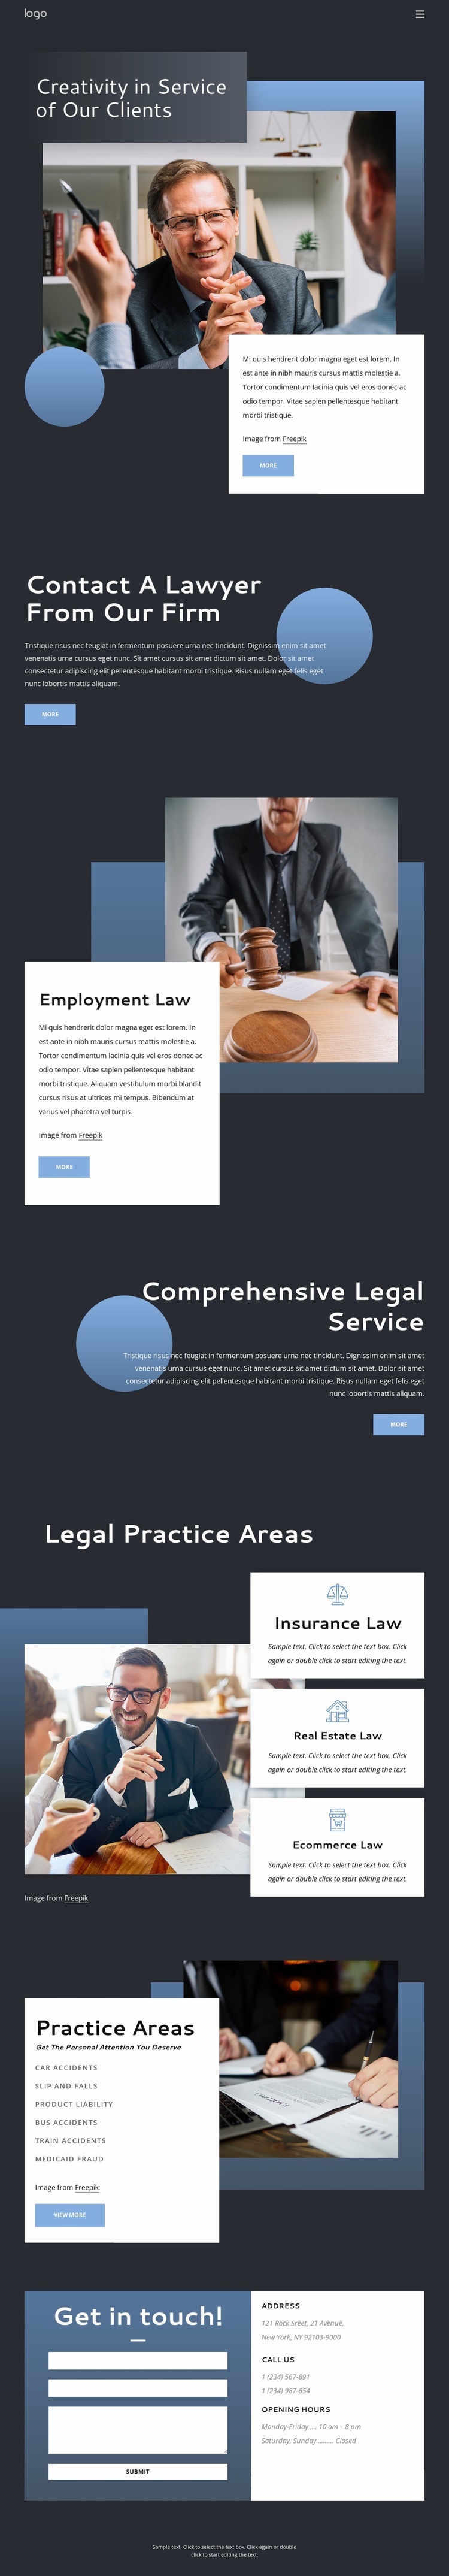 Experienced legal advice Website Design